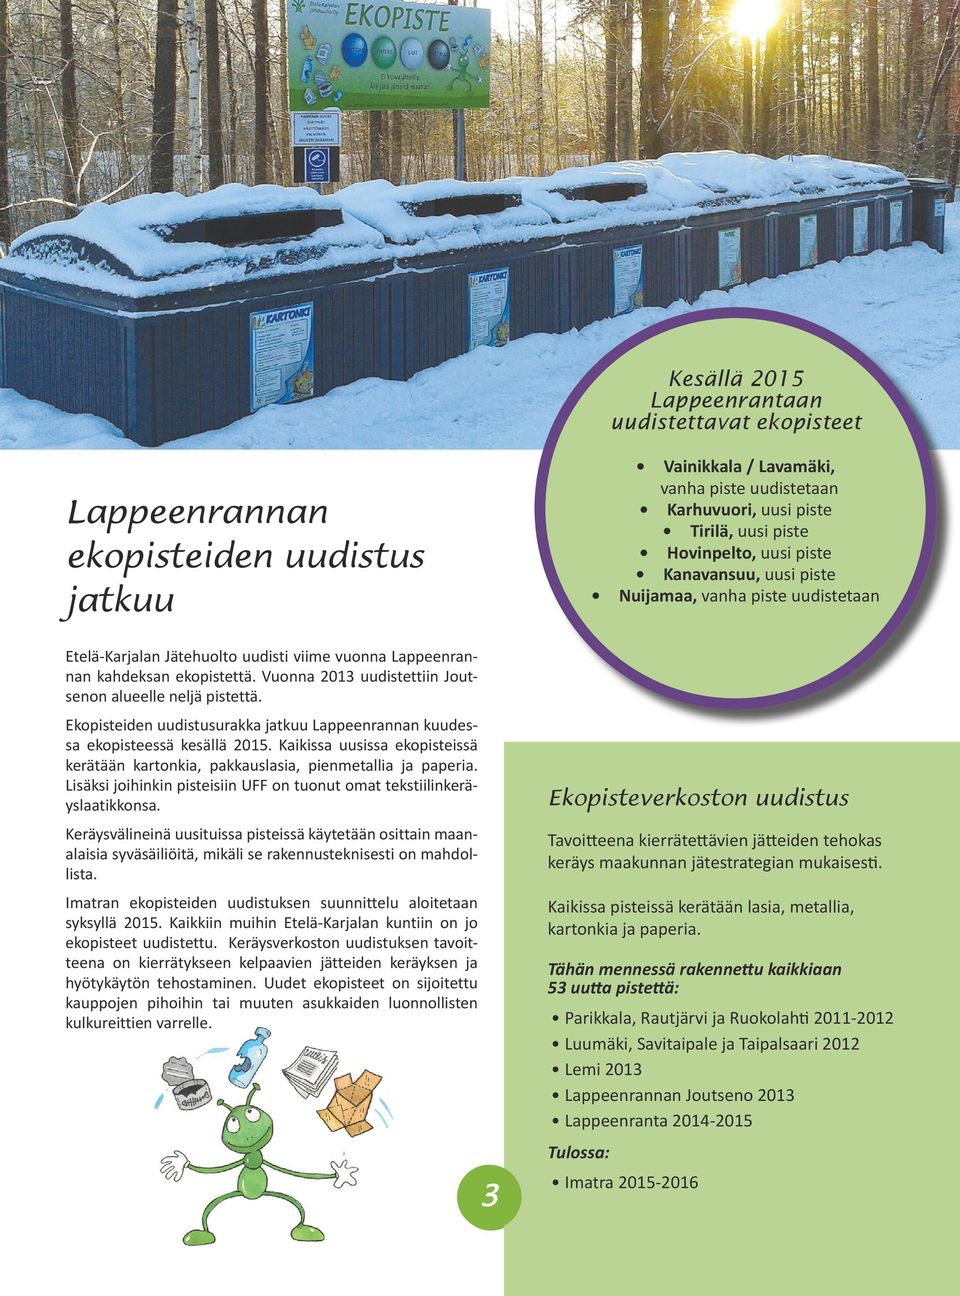 Vuonna 2013 uudistettiin Joutsenon alueelle neljä pistettä. Ekopisteiden uudistusurakka jatkuu Lappeenrannan kuudessa ekopisteessä kesällä 2015.